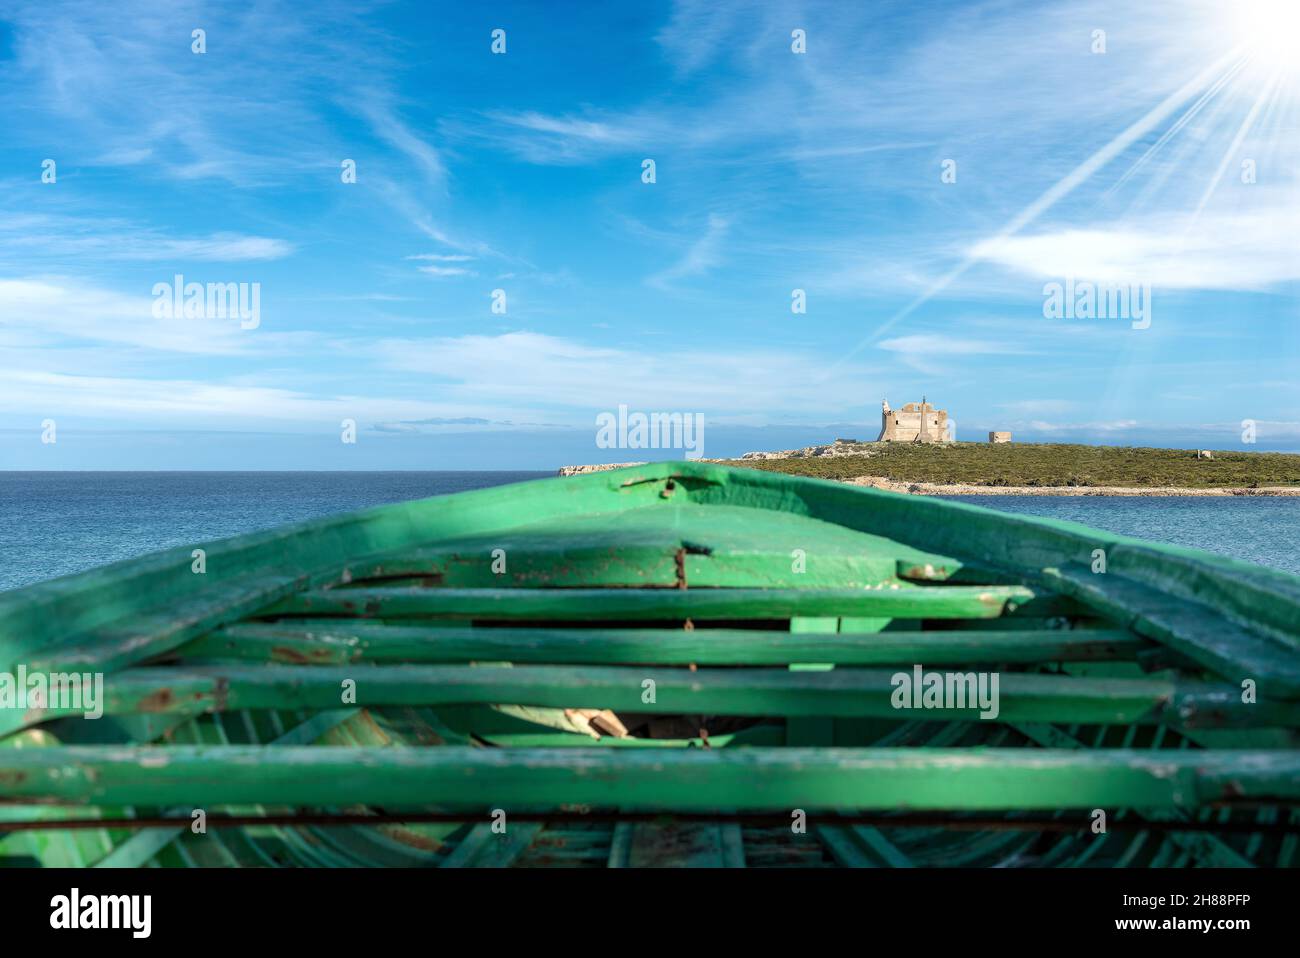 Green wooden boat of migrants and Mediterranean Sea in Portopalo di Capo Passero, Sicily island, Syracuse, Italy, south Europe Stock Photo